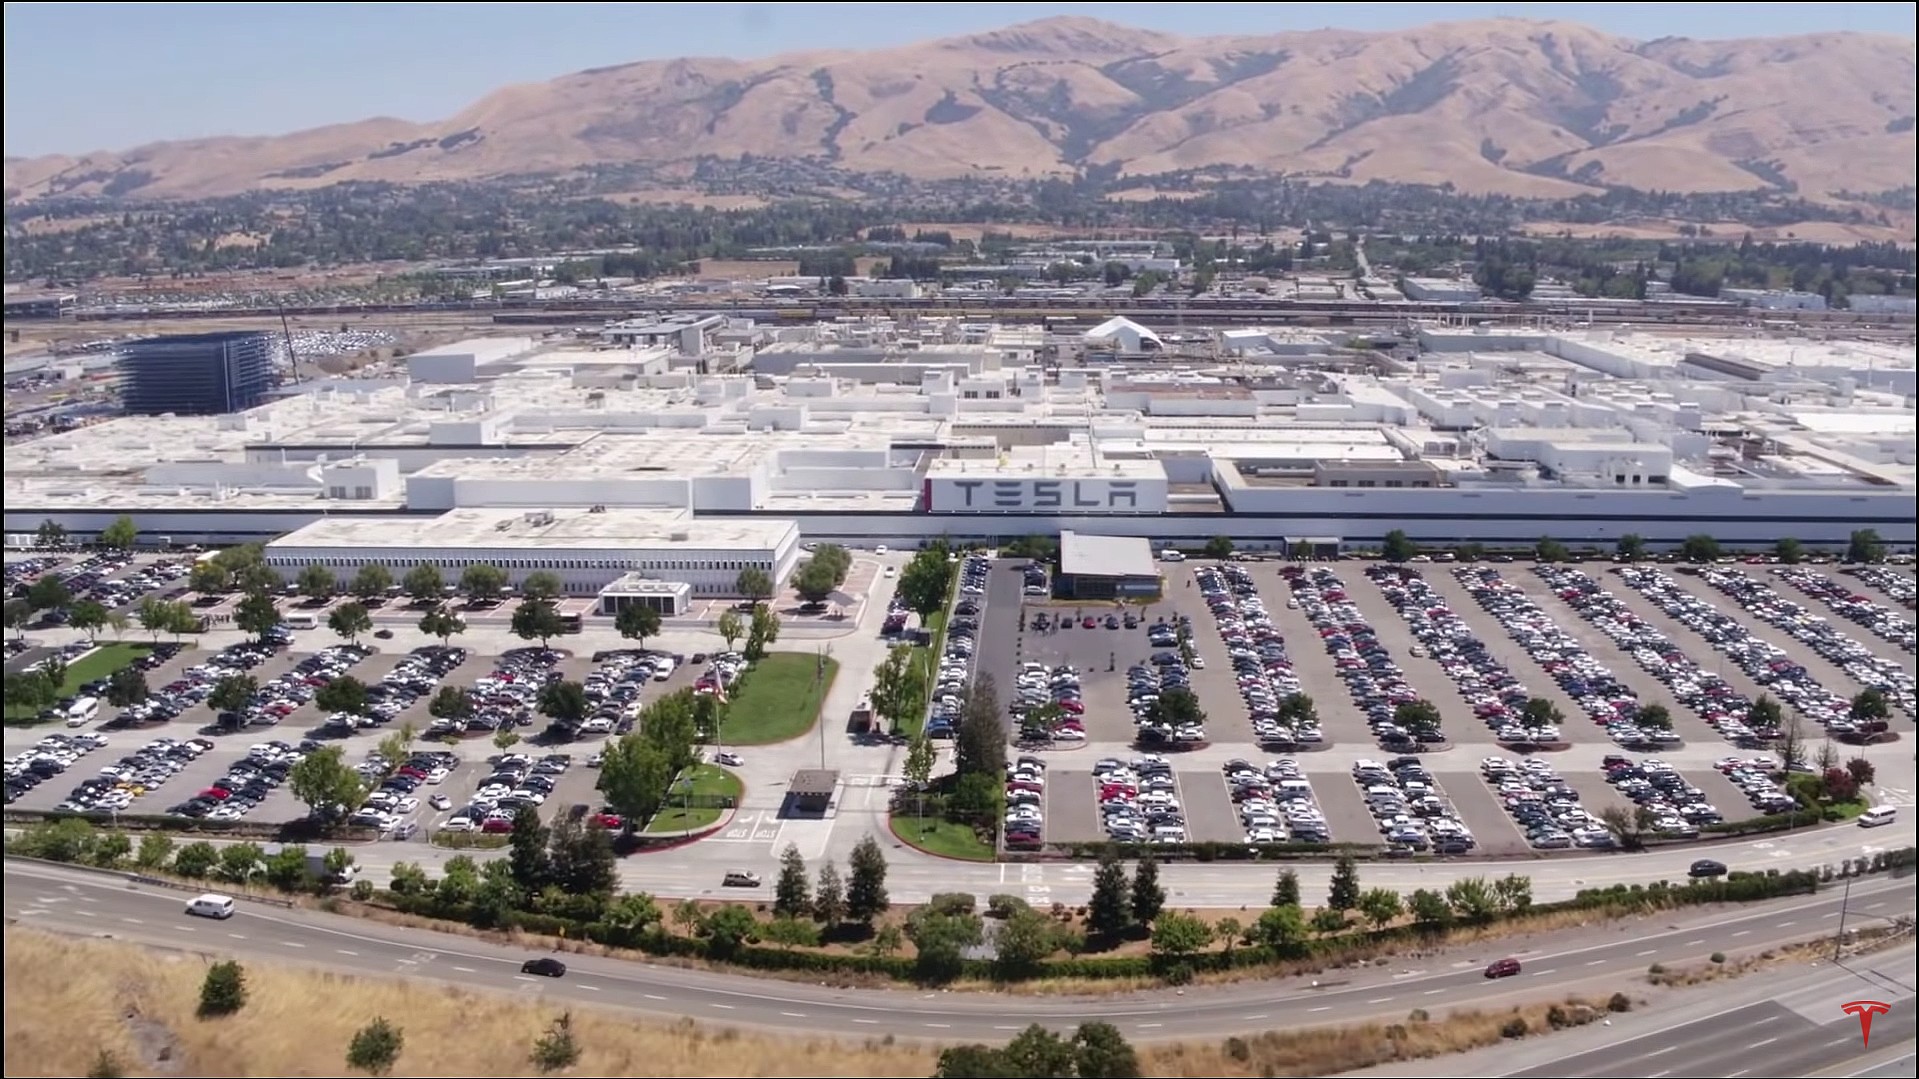 Obrazek przedstawia fabrykę firmy Tesla znajdującą się w kalifornijskim mieście Fremont.